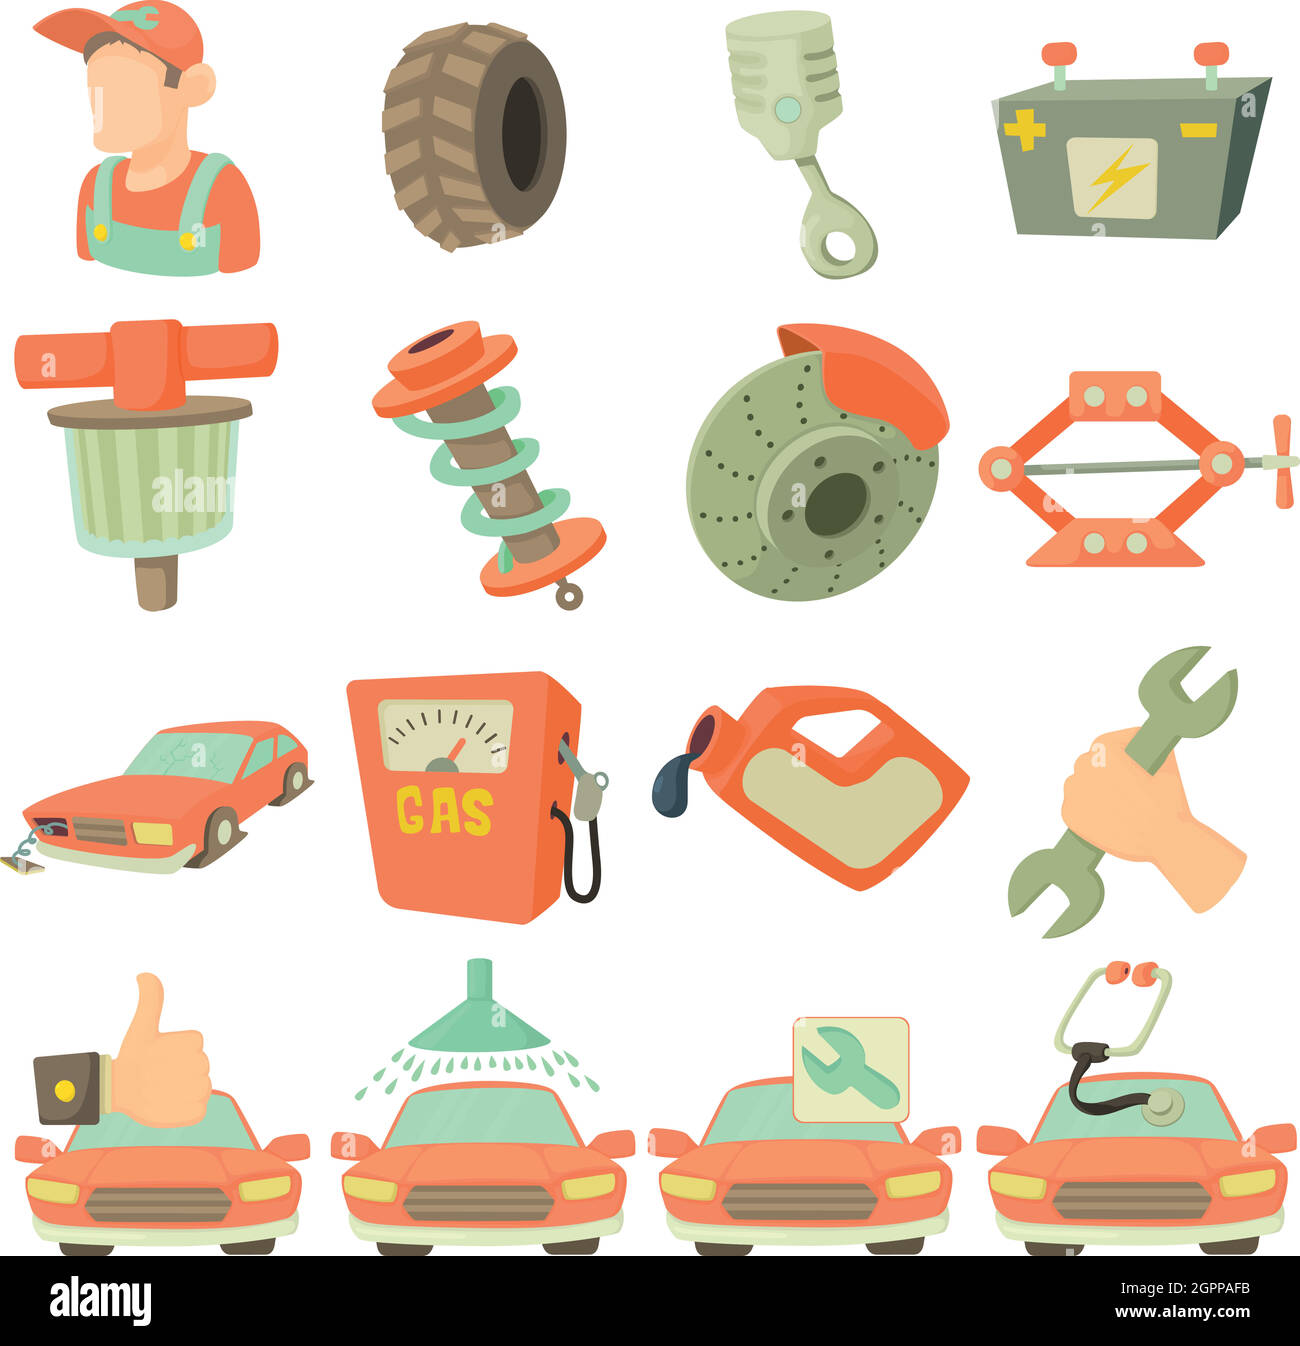 Car repair items icons set, cartoon style Stock Vector